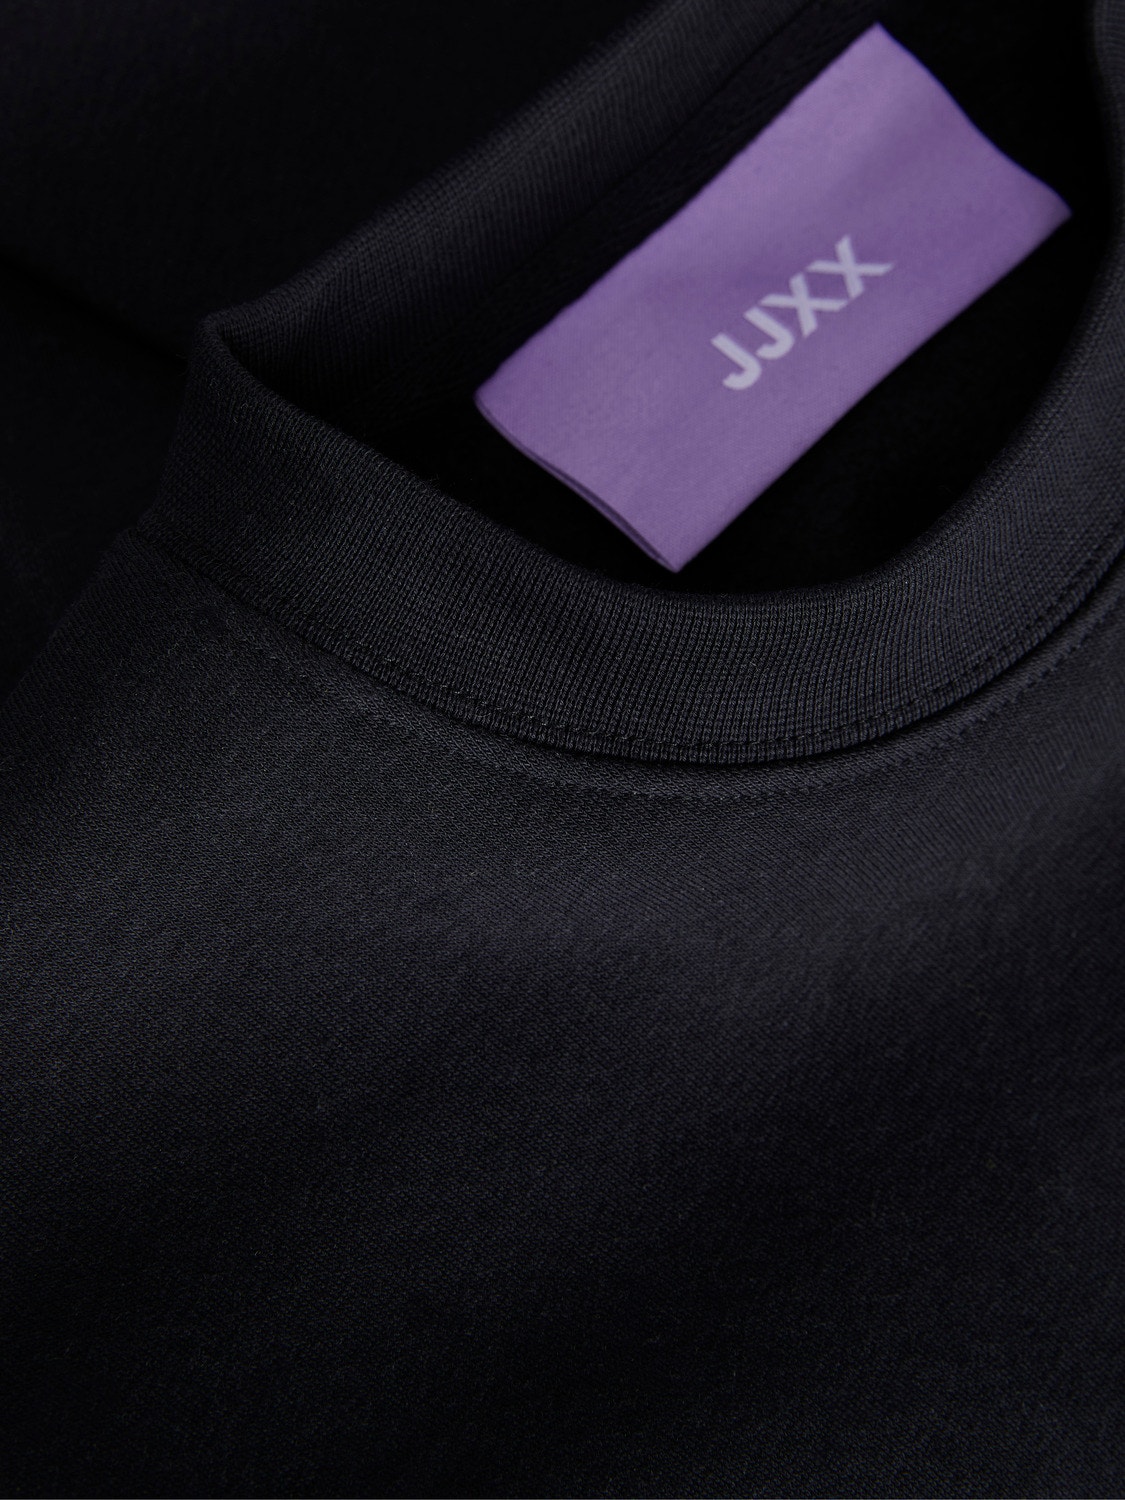 JJXX JXABBIE Személyzeti nyakú pulóver -Black - 12214536